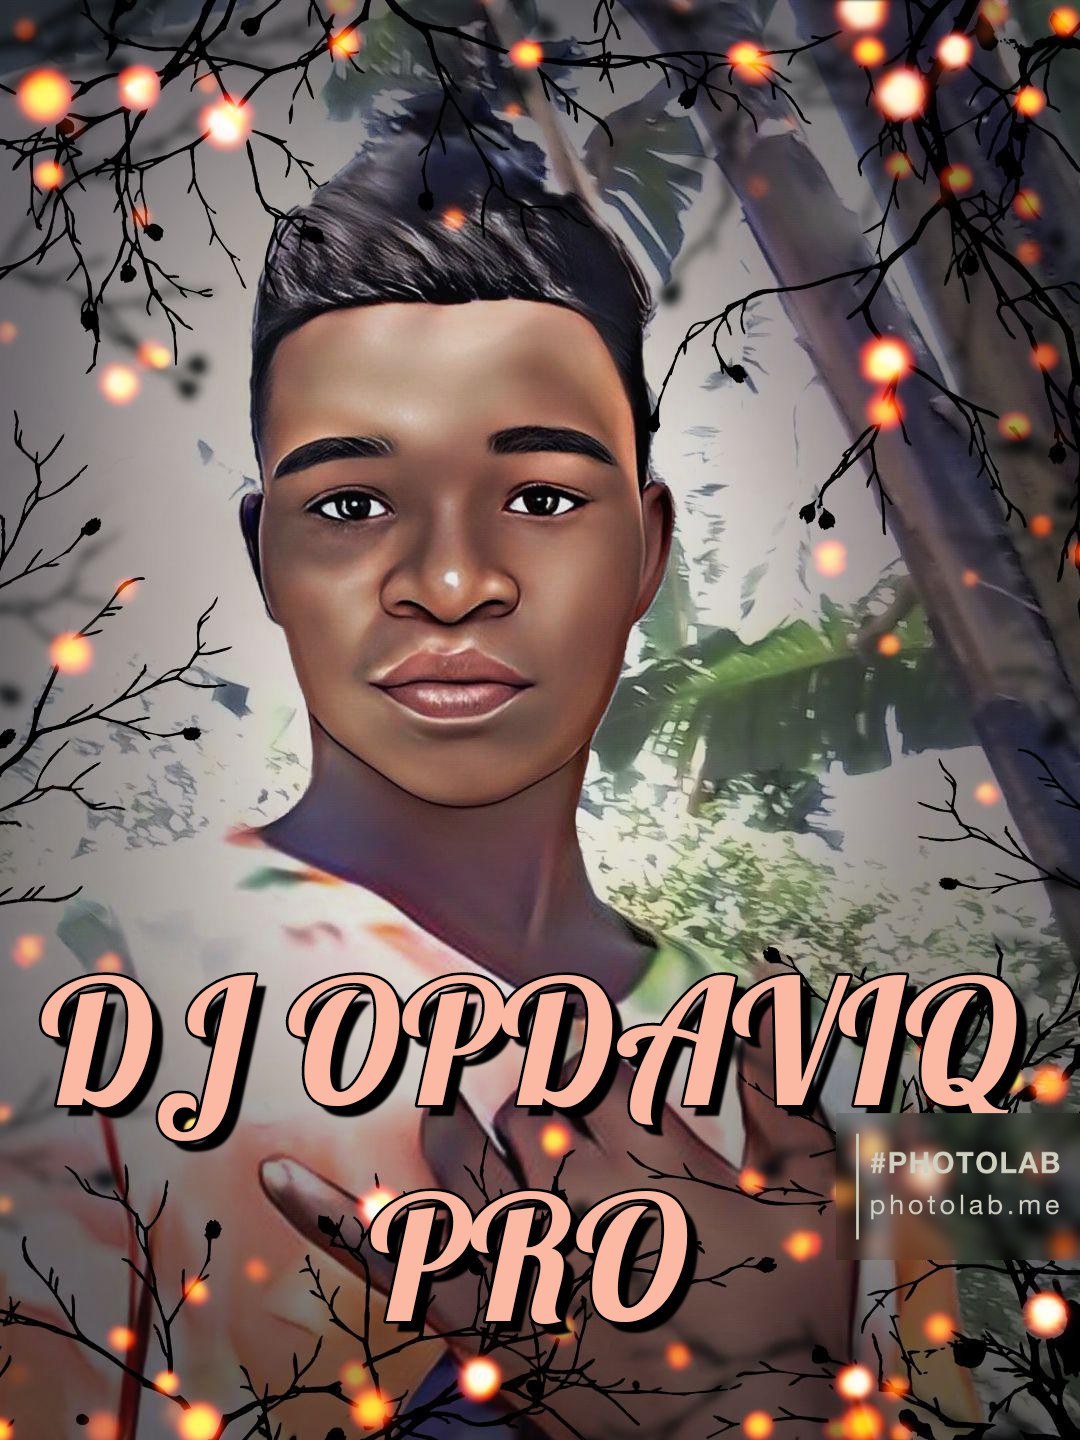 DJ Opdaviq Pro